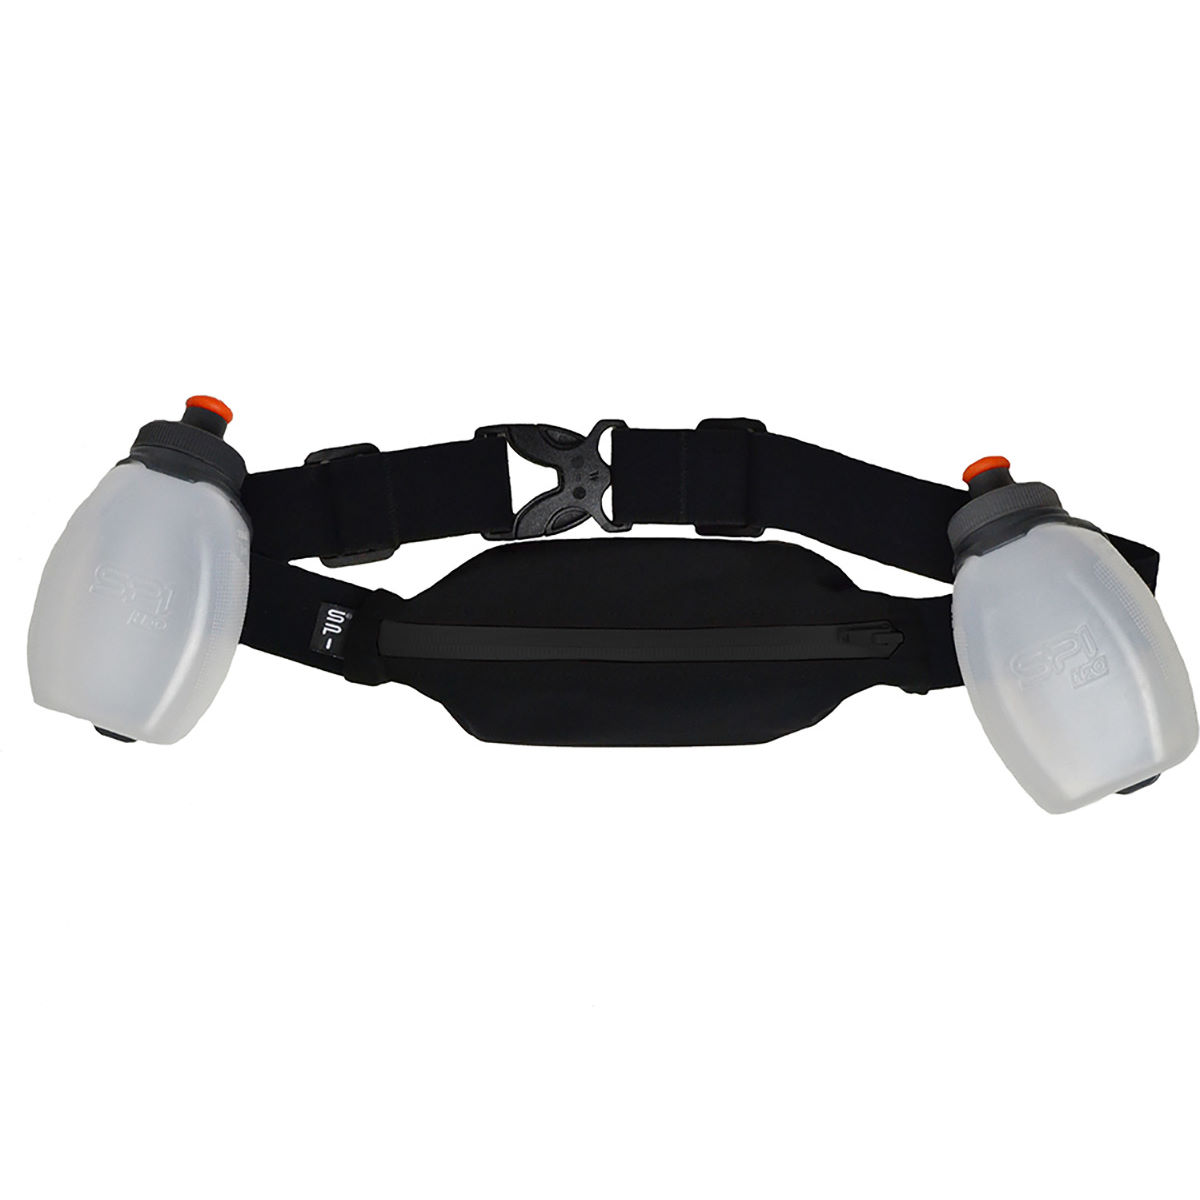 Cinturón SPIbelt - Discance Pro Rinning (negro, talla única) - Cinturones de running